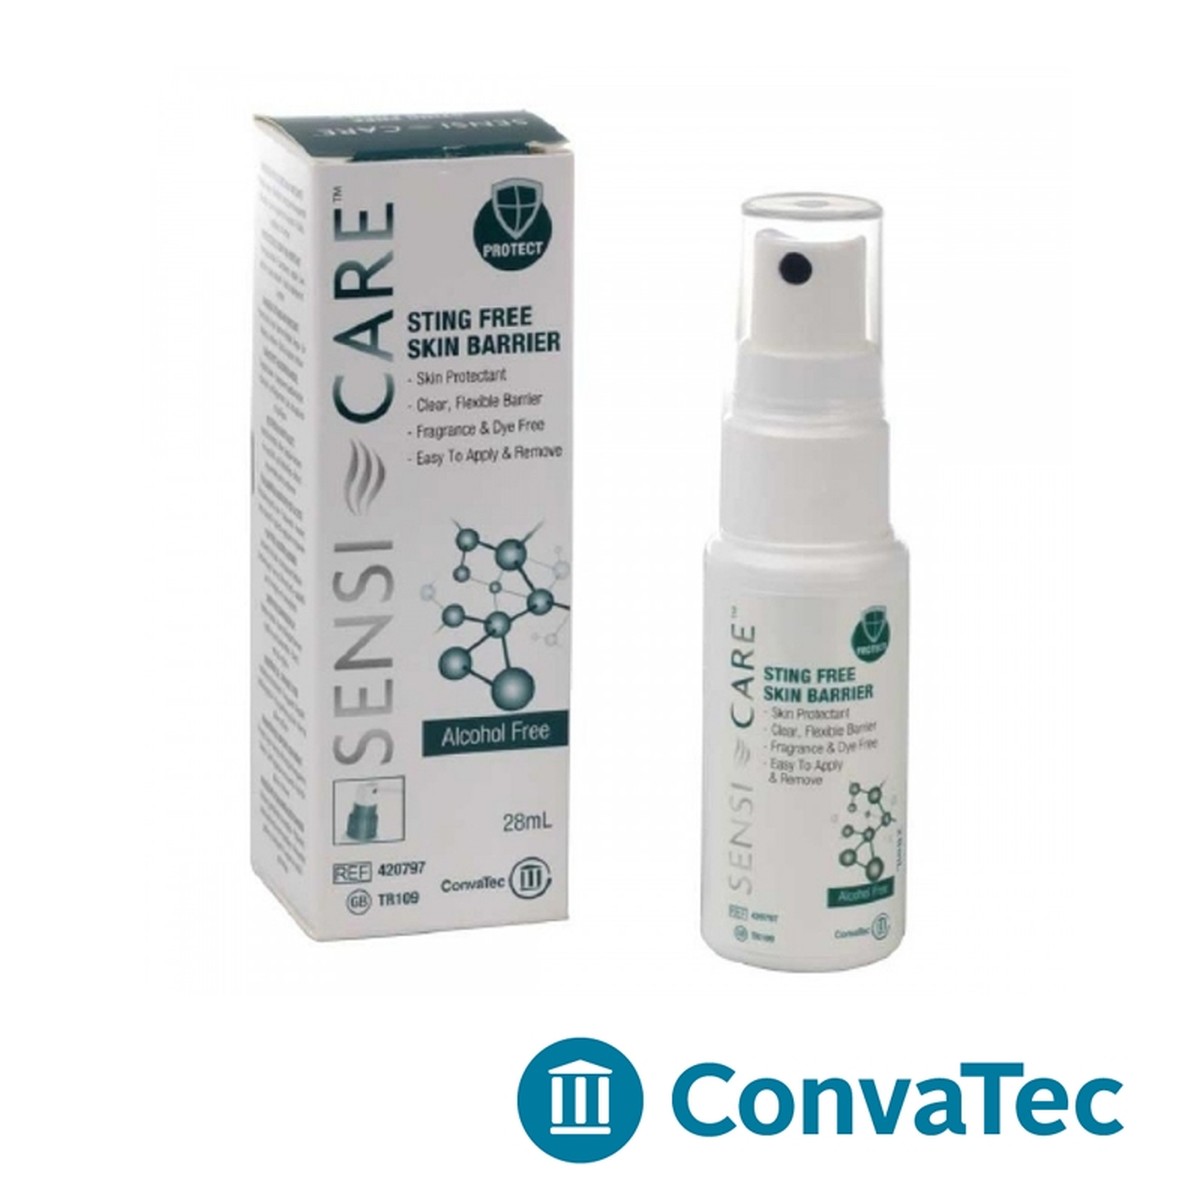 Foto do produto Sensi-care barreira Protetora Spray Convatec